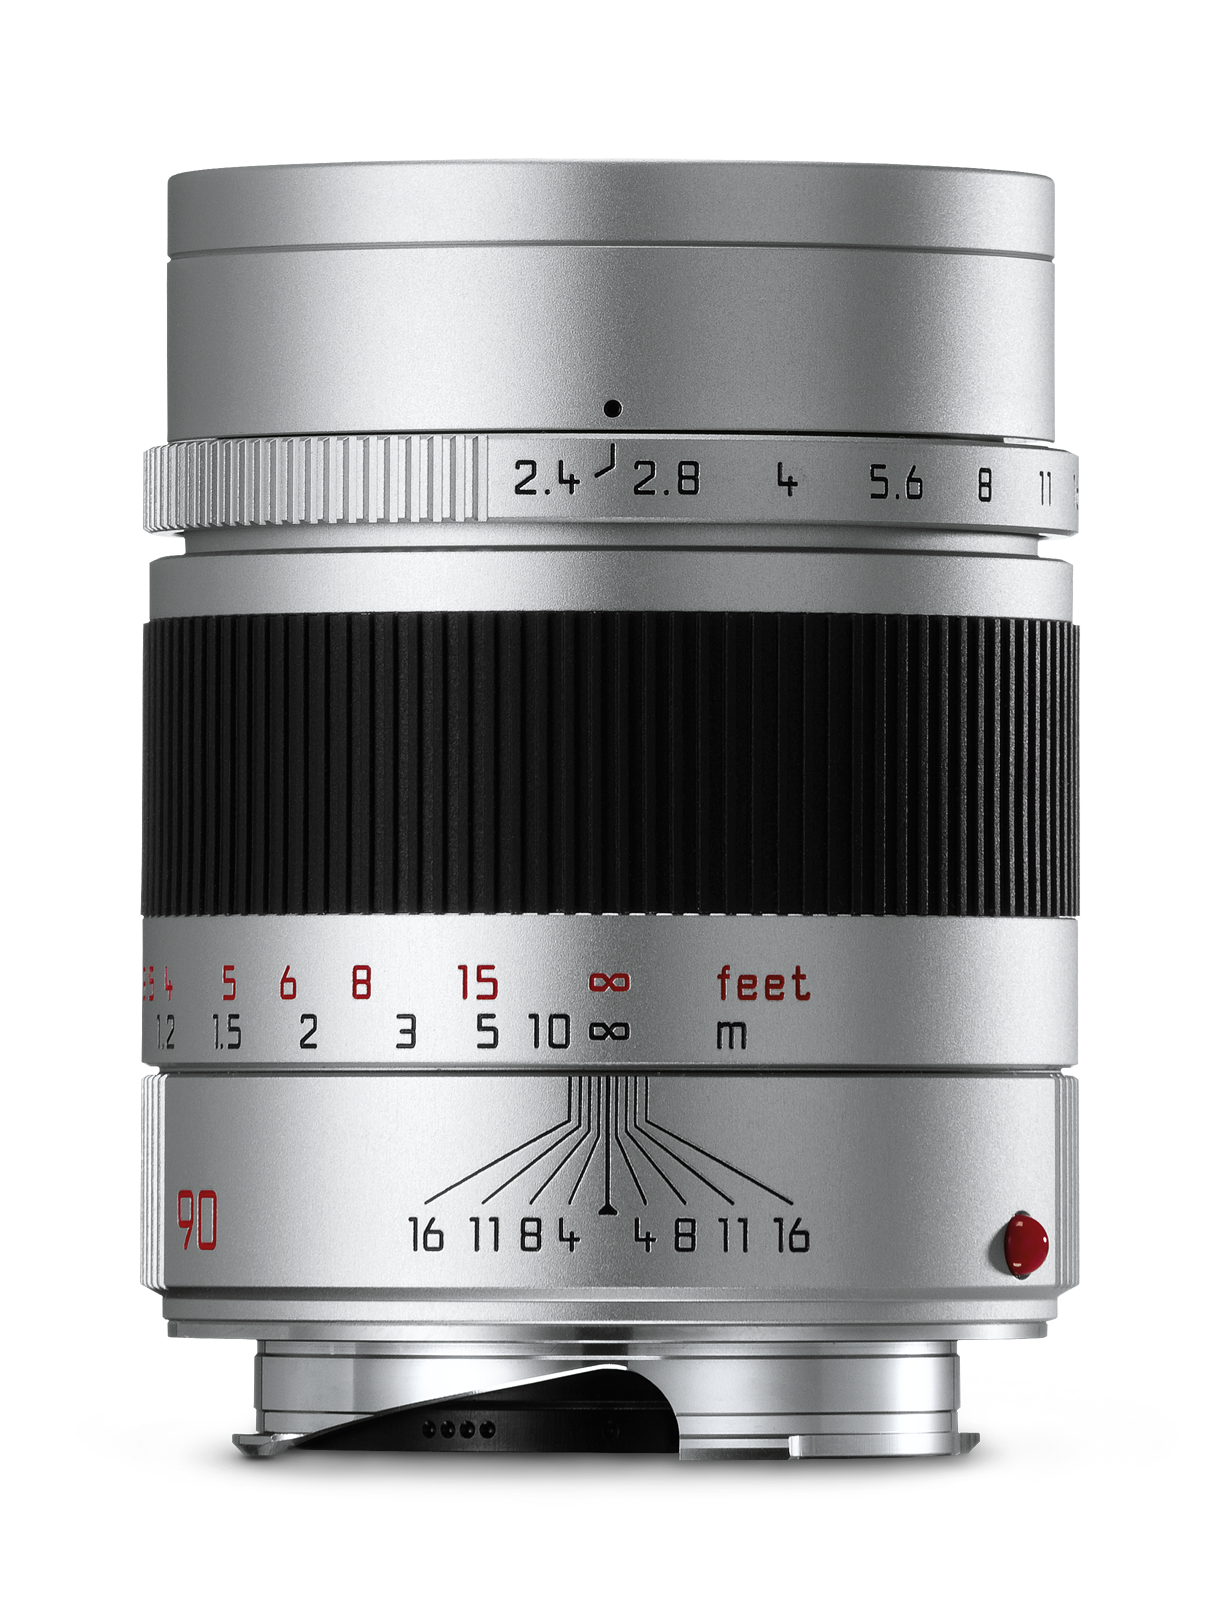 ズマリットM f2.4/90mm シルバー | Leica Camera JP